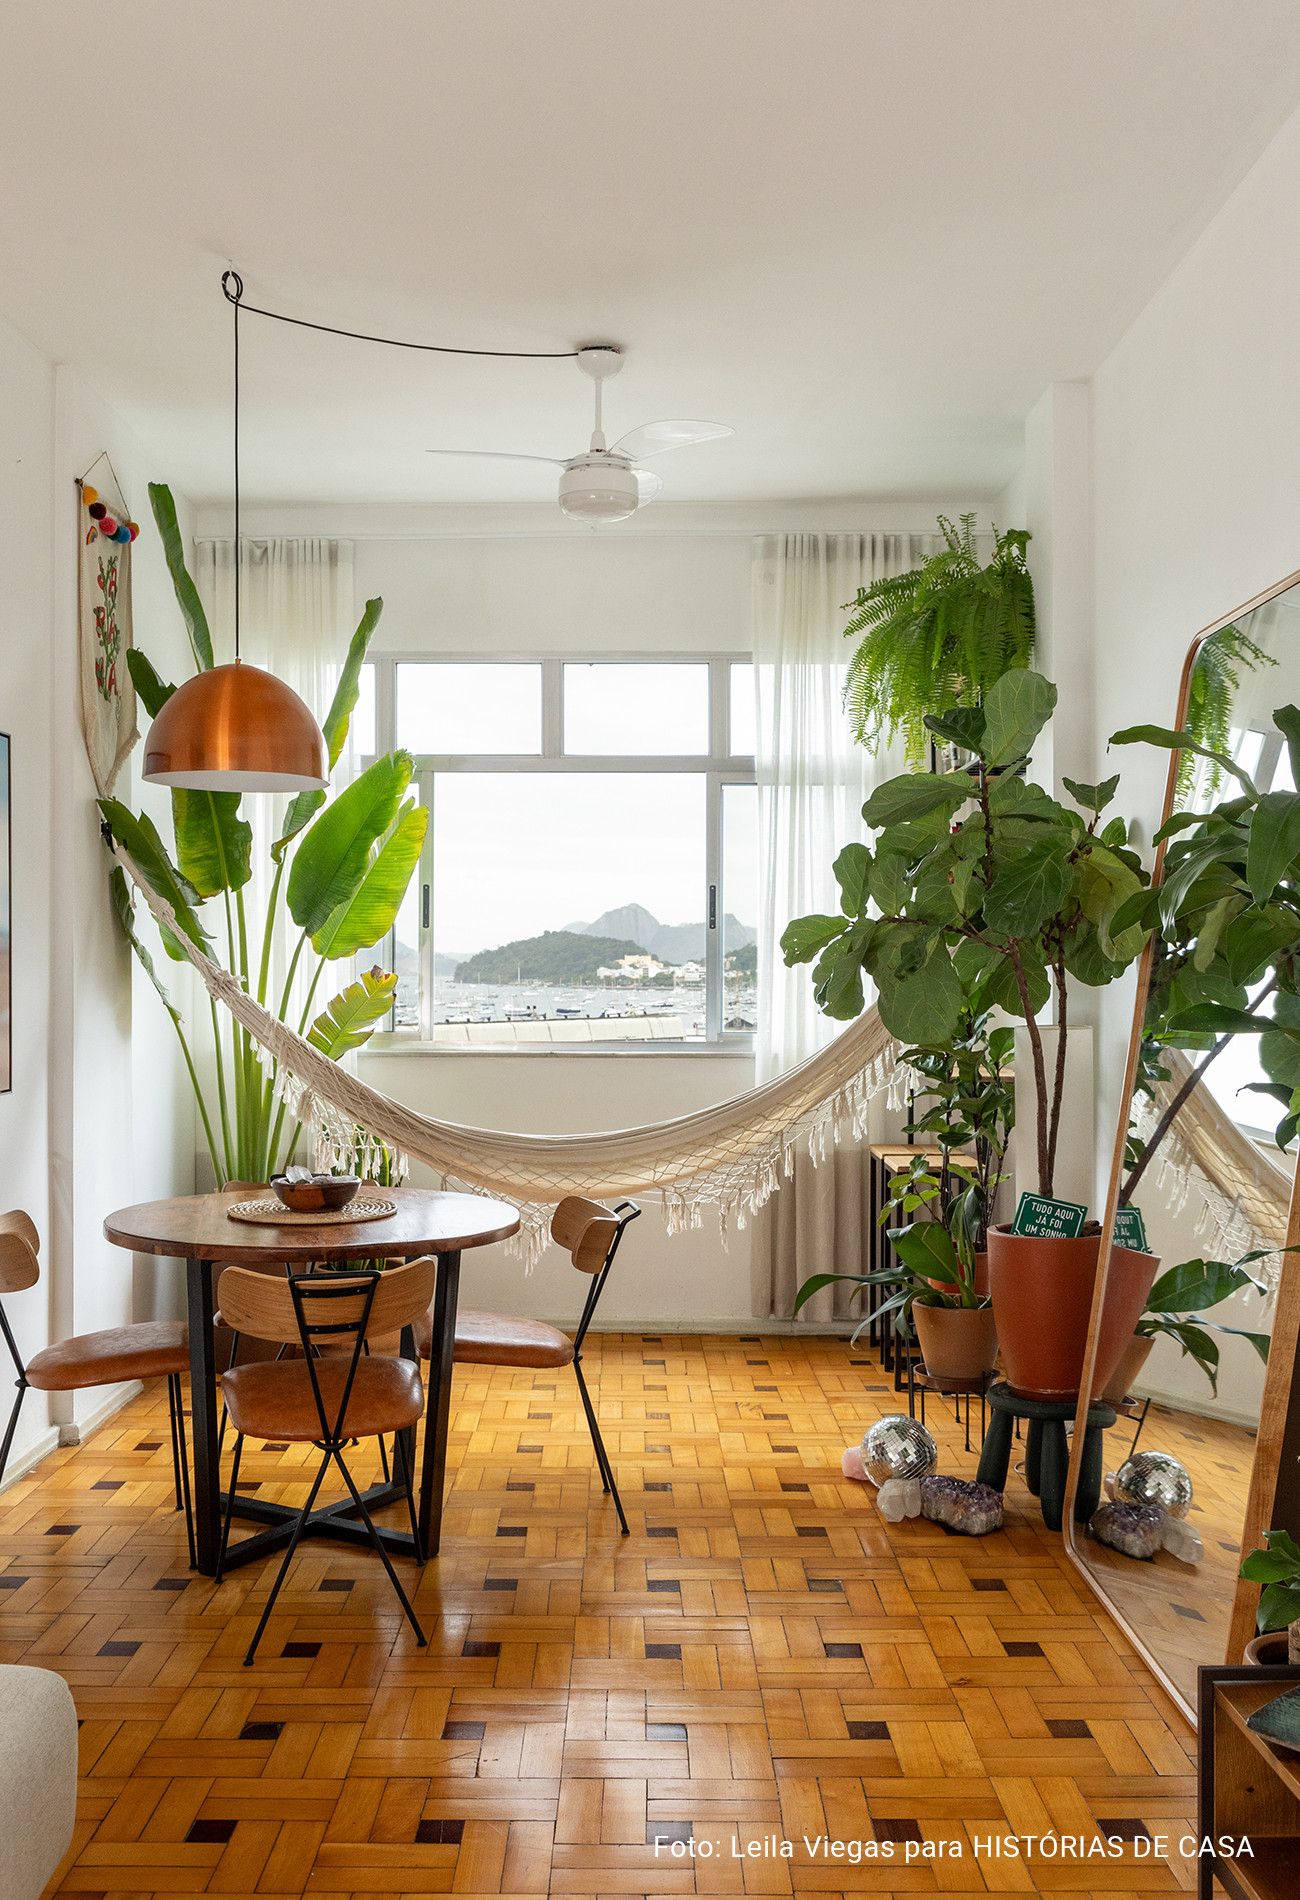 Apartamento com vista para a praia no Rio de Janeiro tem piso de tacos e decoração com plantas.